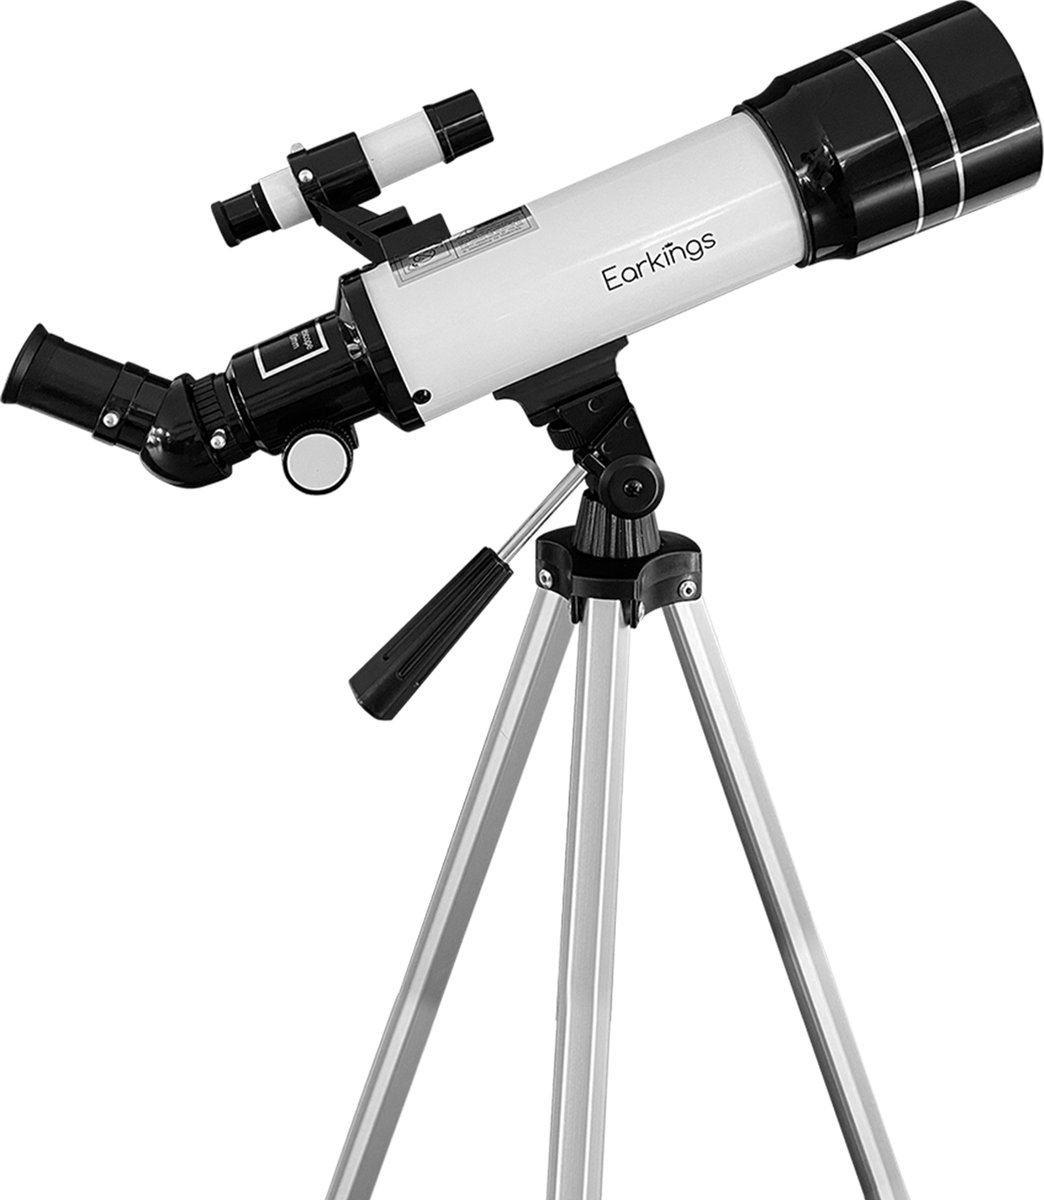 Earkings Telescoop Sterrenkijker 70/400 mm voor Kinderen, Beginners en Gevorderden - Inclusief Statief, Opbergtas, Twee Lenzen 25mm & 10mm en Barlow Lens, Telefoon Houder voor Foto’s - f/5.7 Magnificatie - EarKings